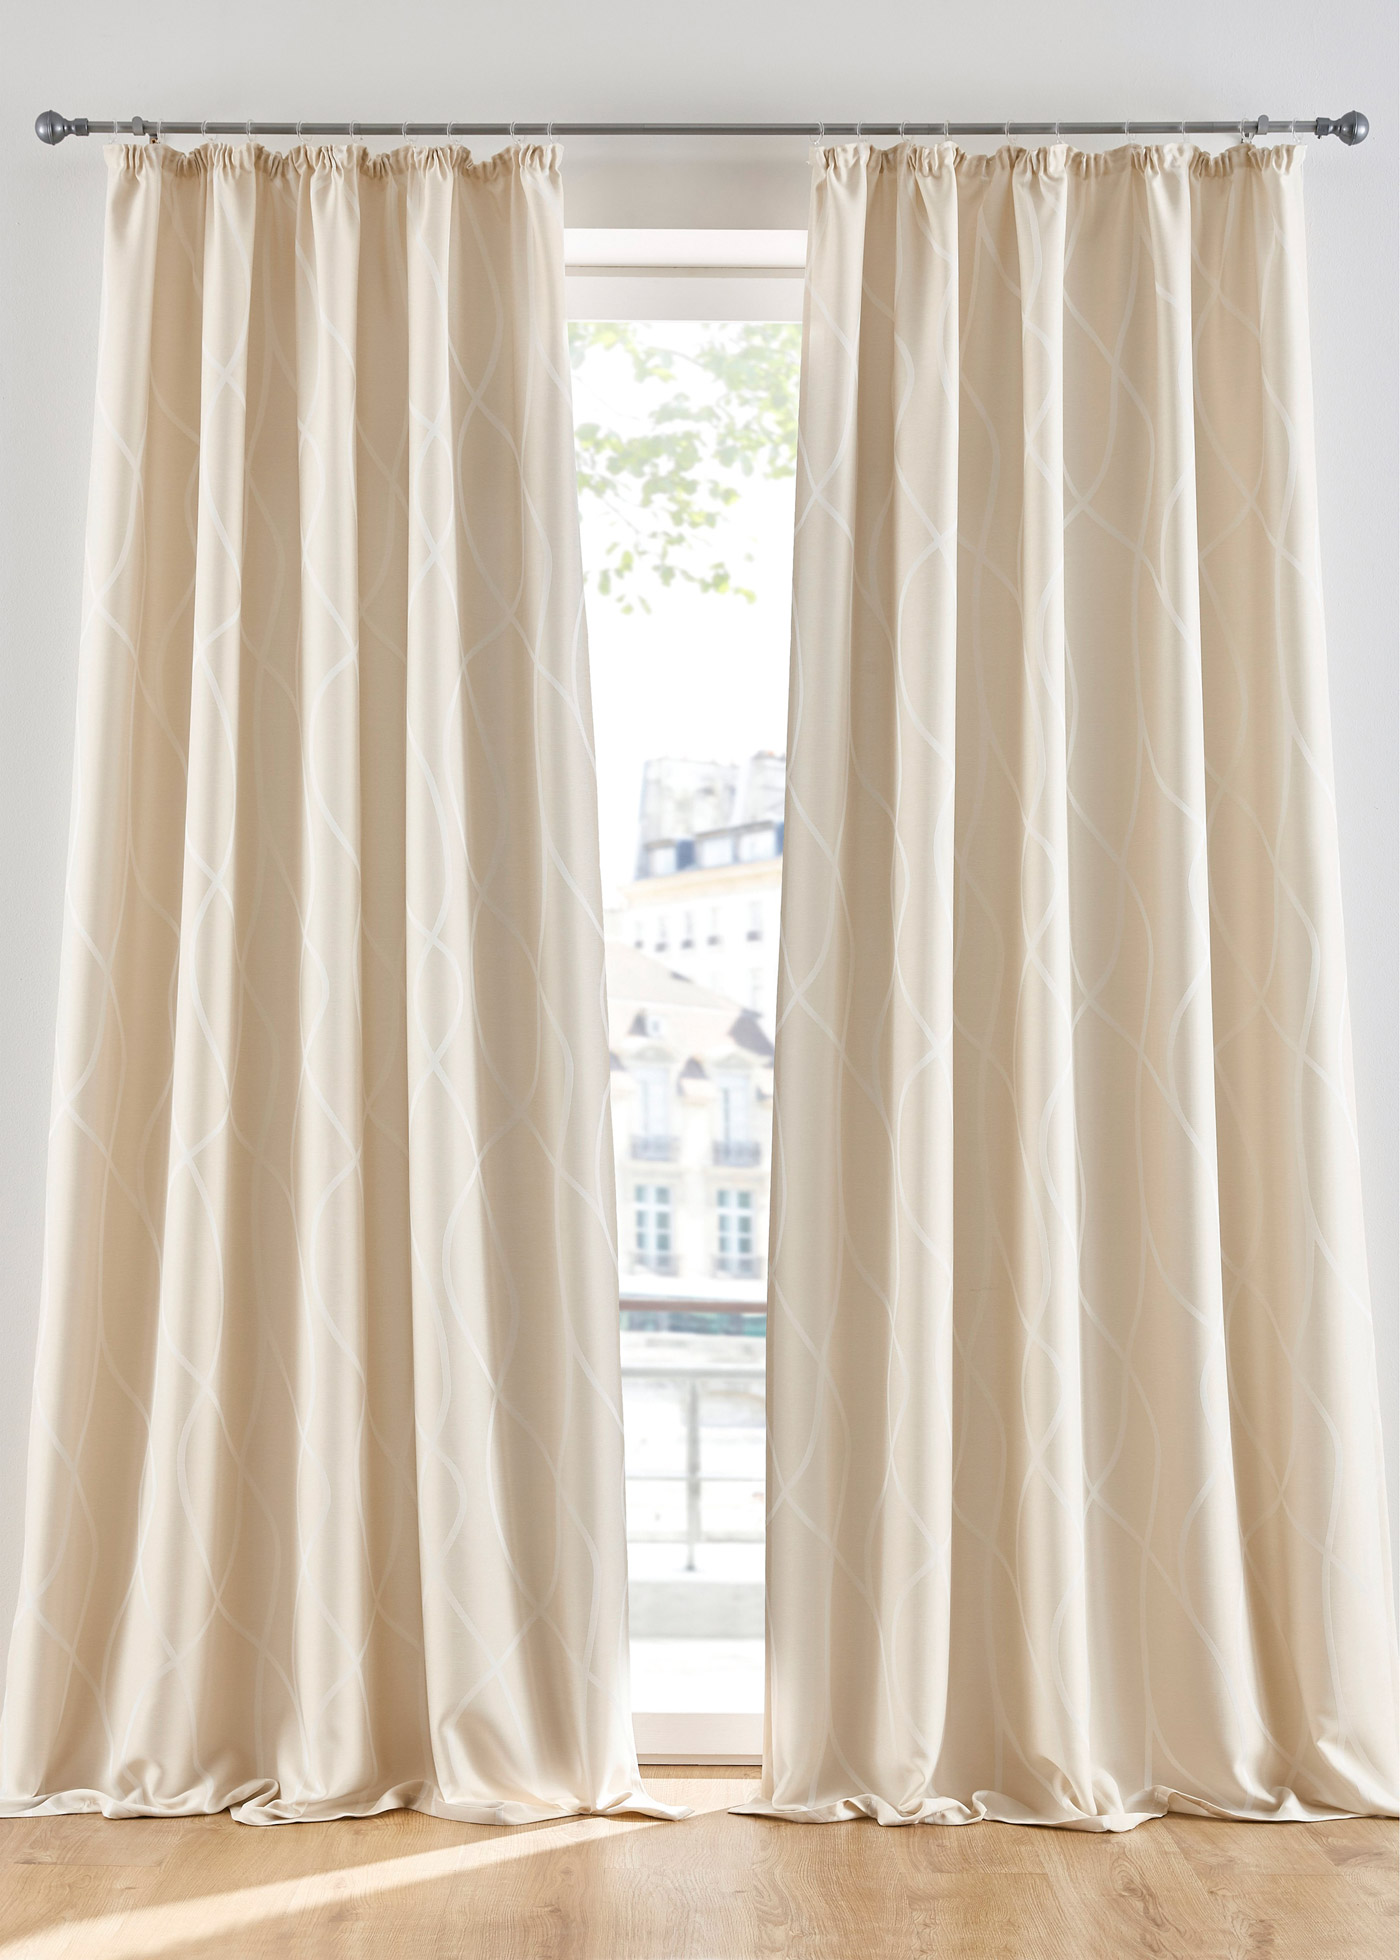 Blickdichter Vorhang mit moderner Jacquard-Musterung (93837595) in creme